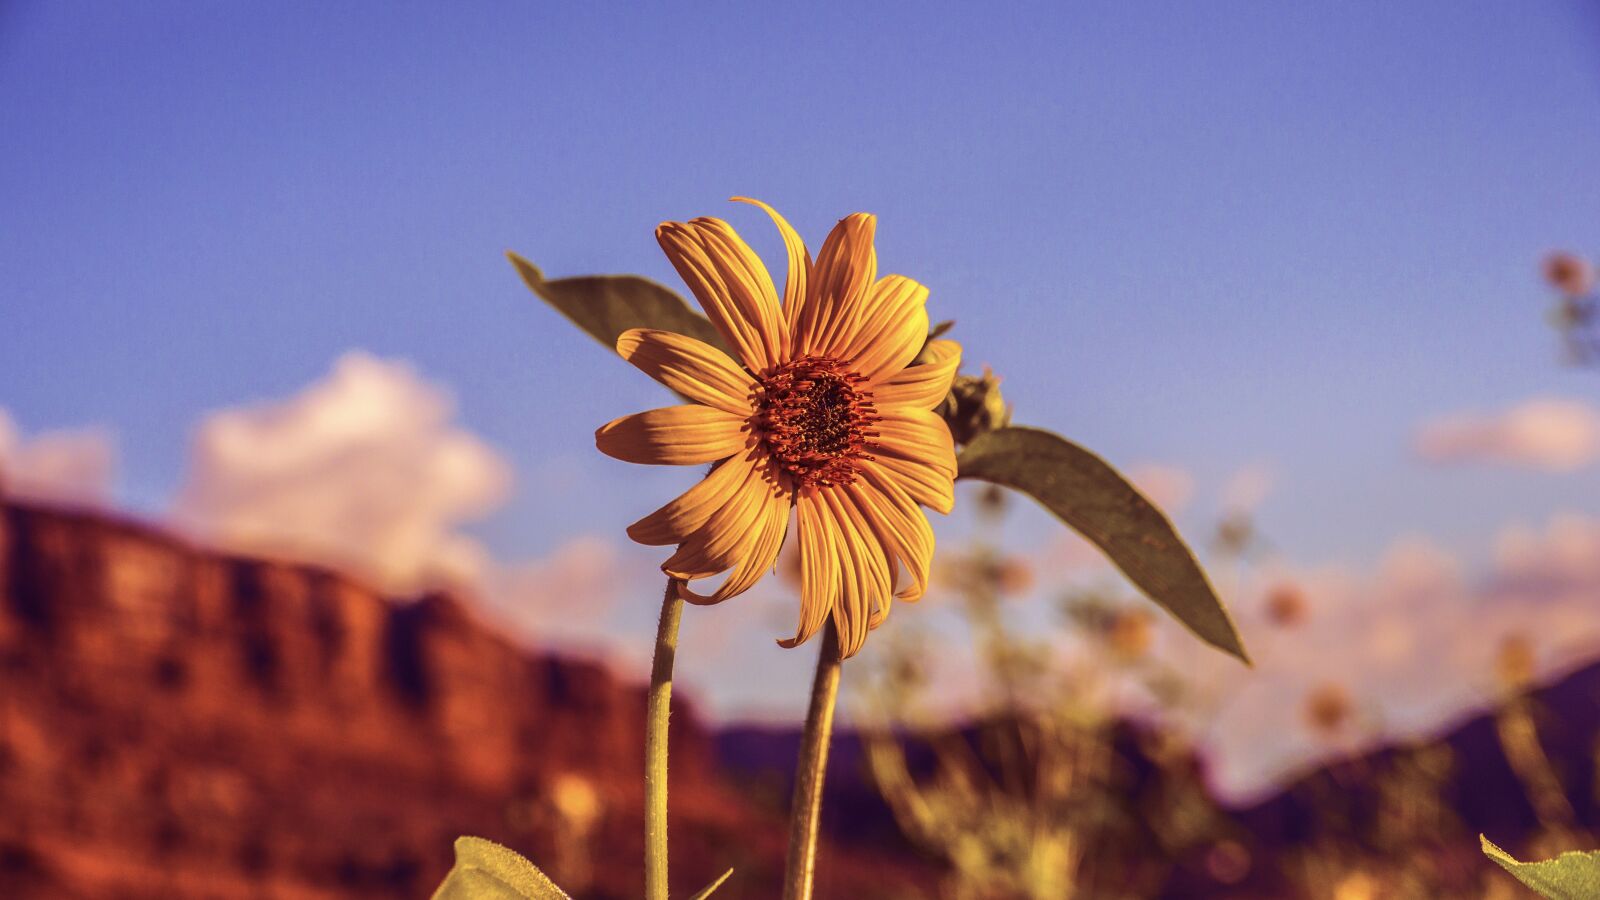 Panasonic Lumix DMC-GH2 sample photo. Sunflower, desert, yellow photography